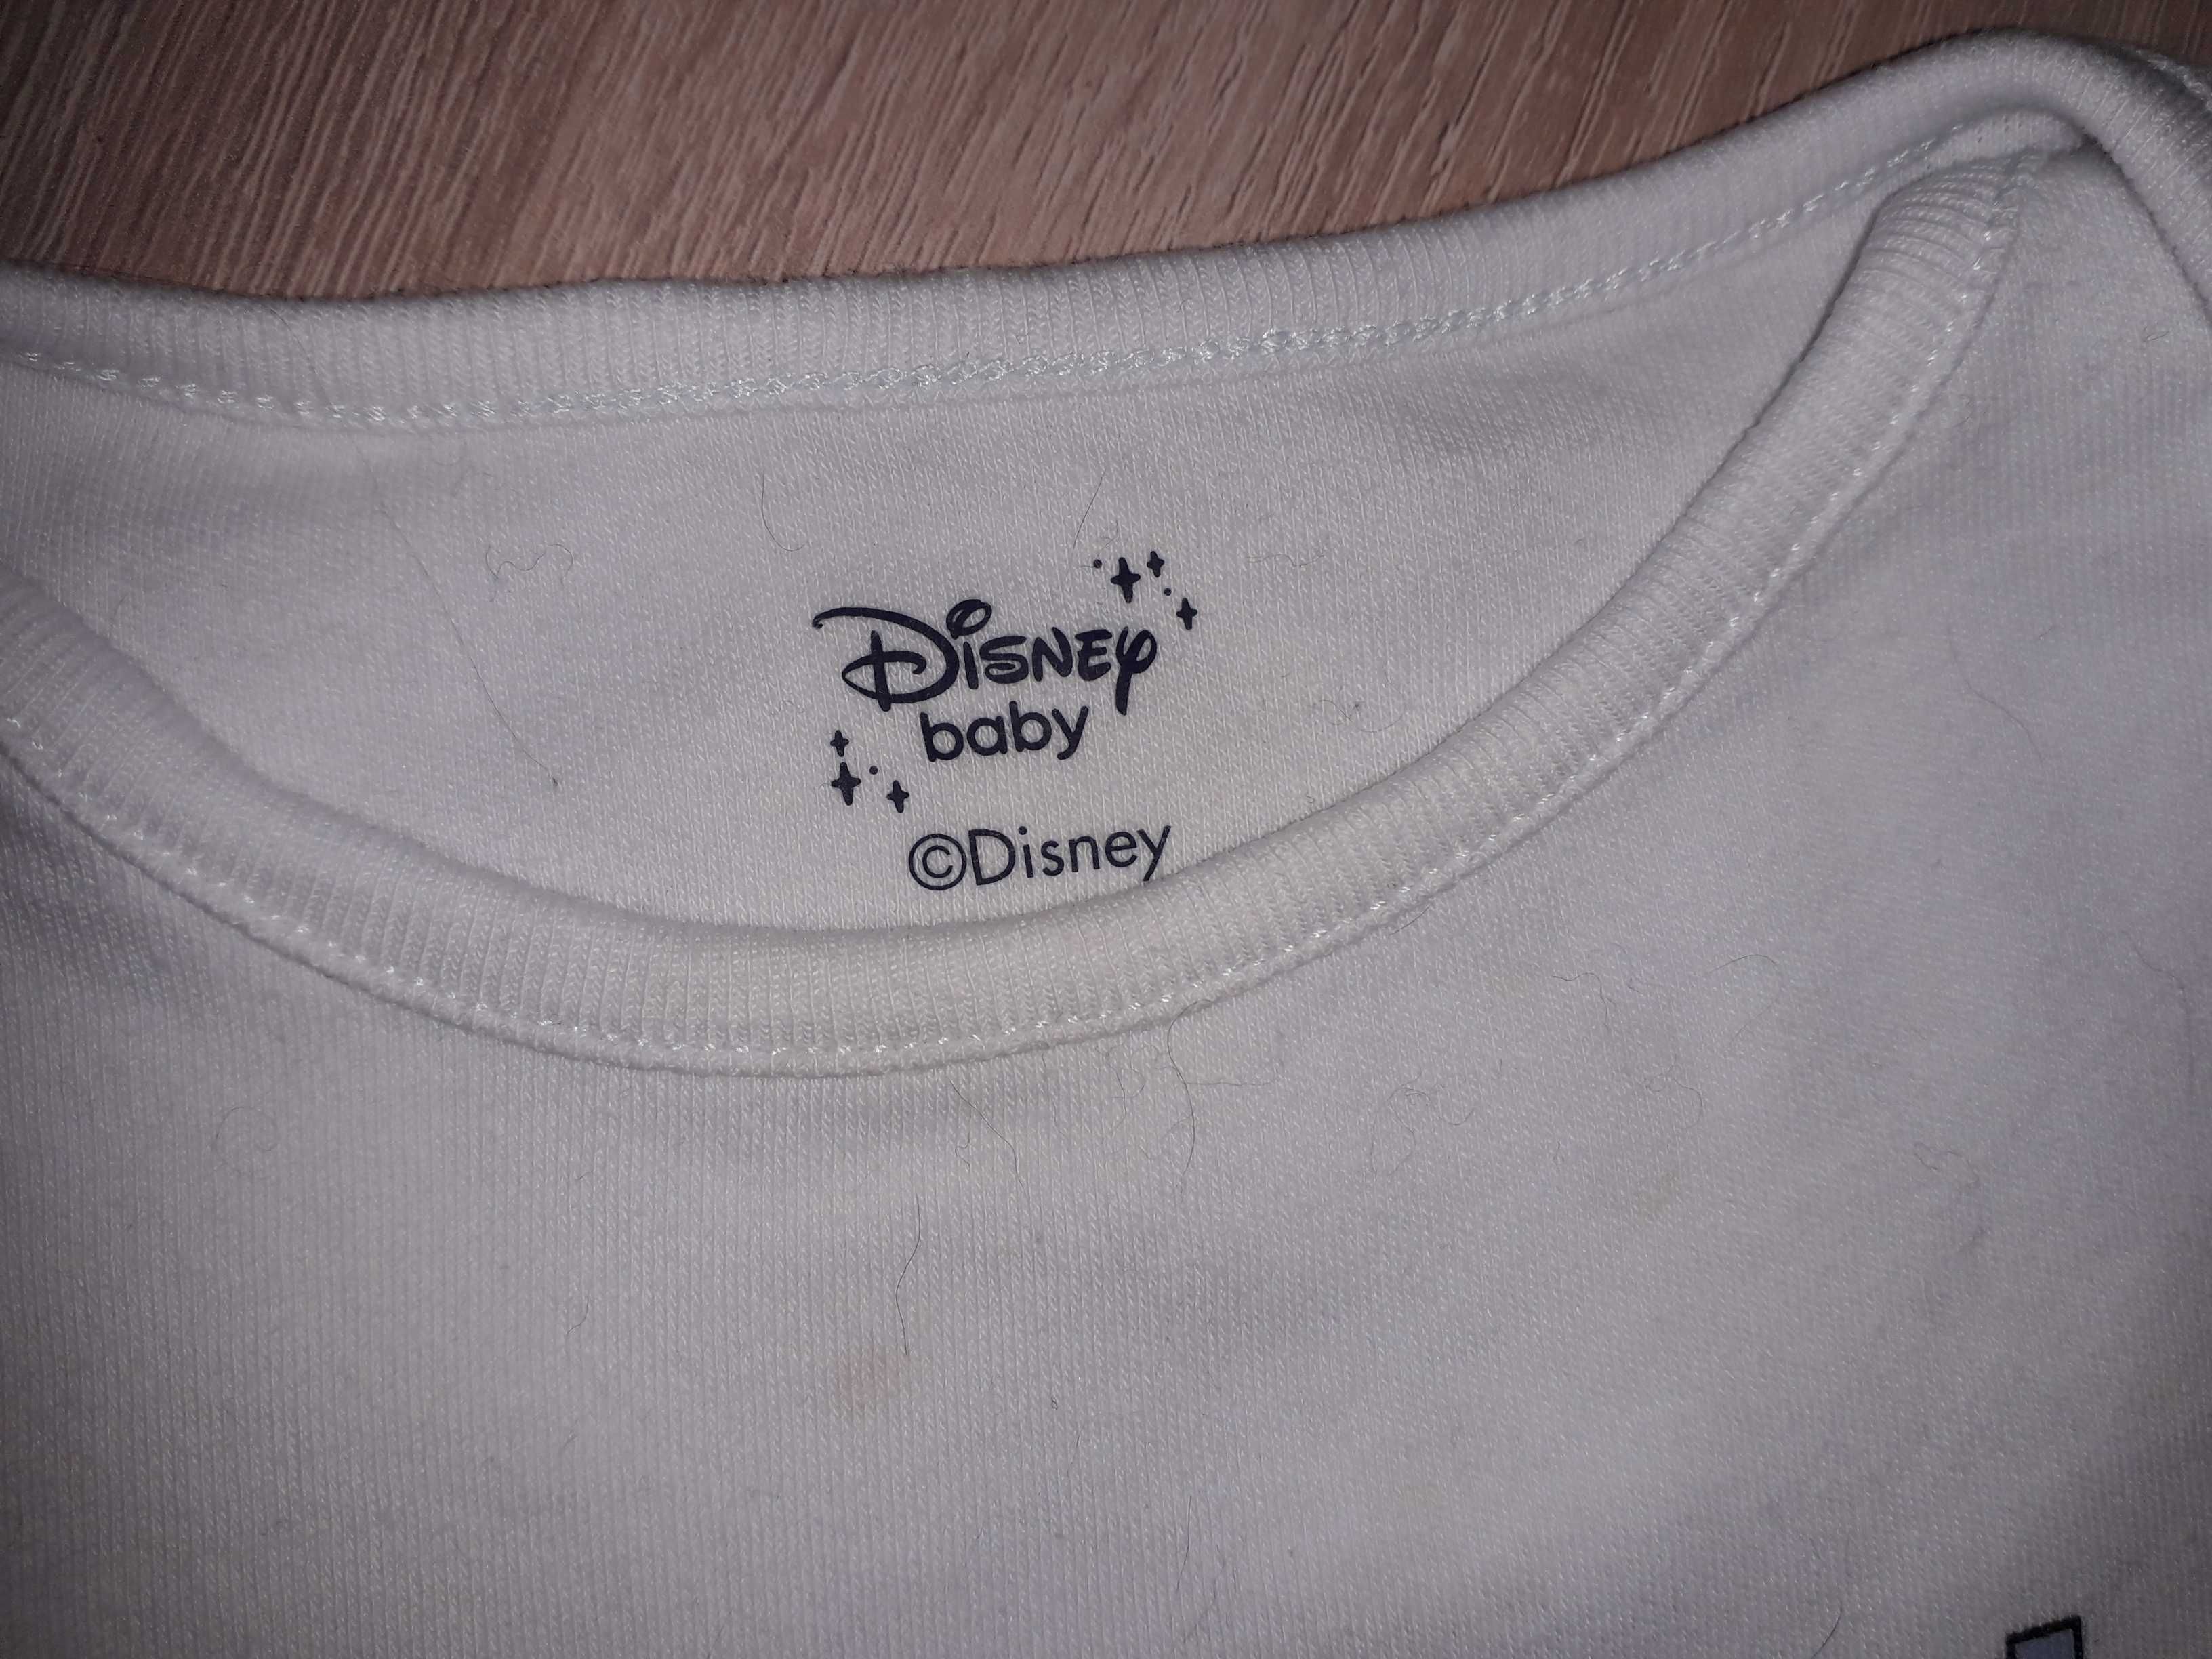 Bluzka dziecięca Miki i przyjaciele, Disney Baby, roz.98cm, 12-18 m.